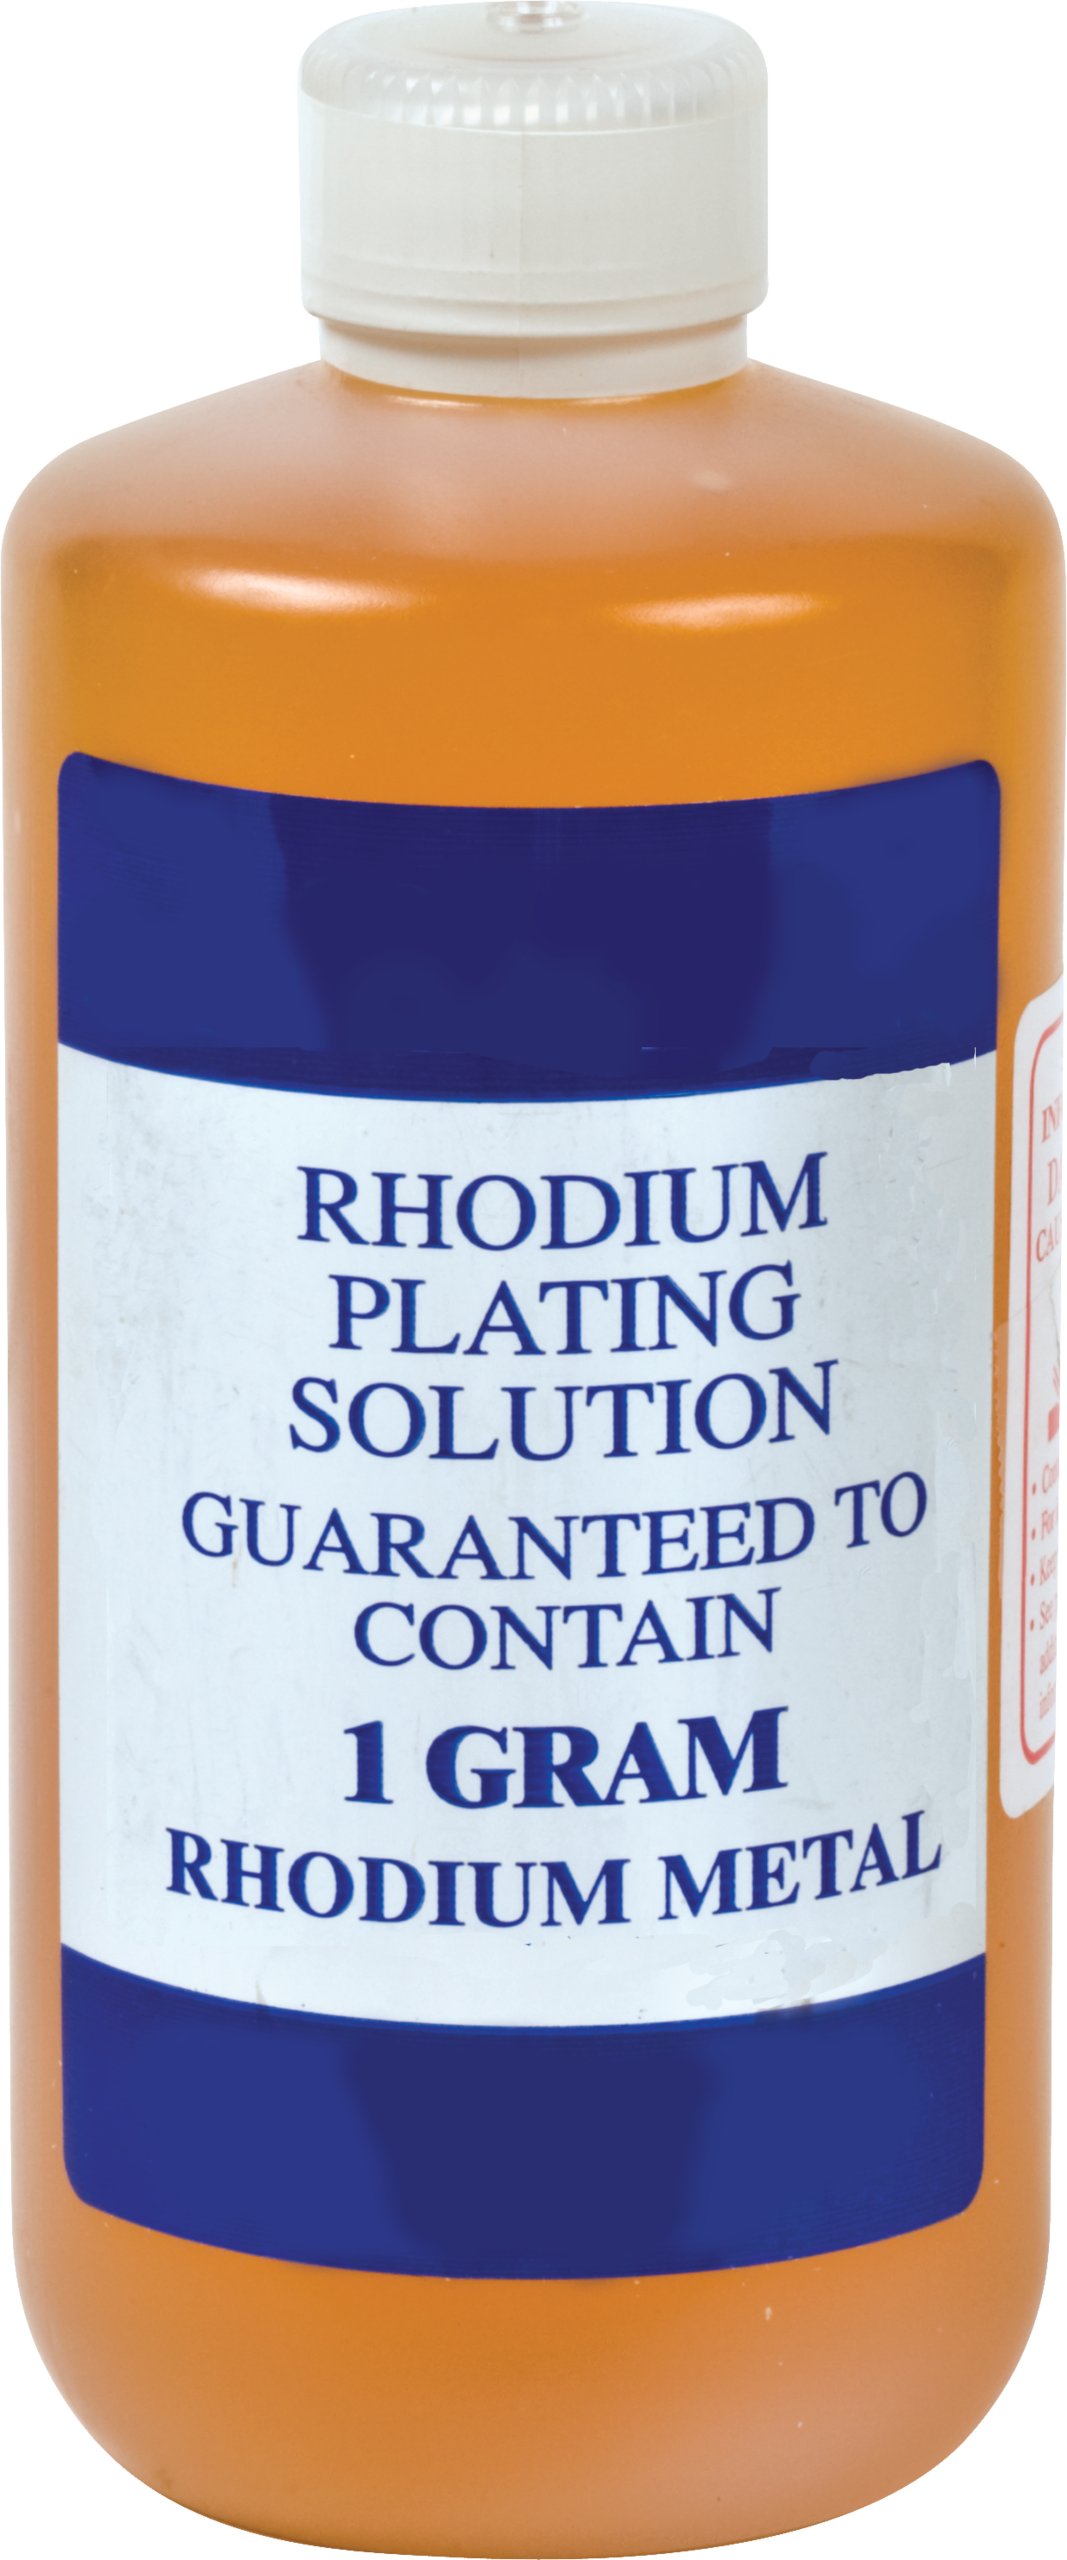 Rhodium Plating Kit - white gold plating 